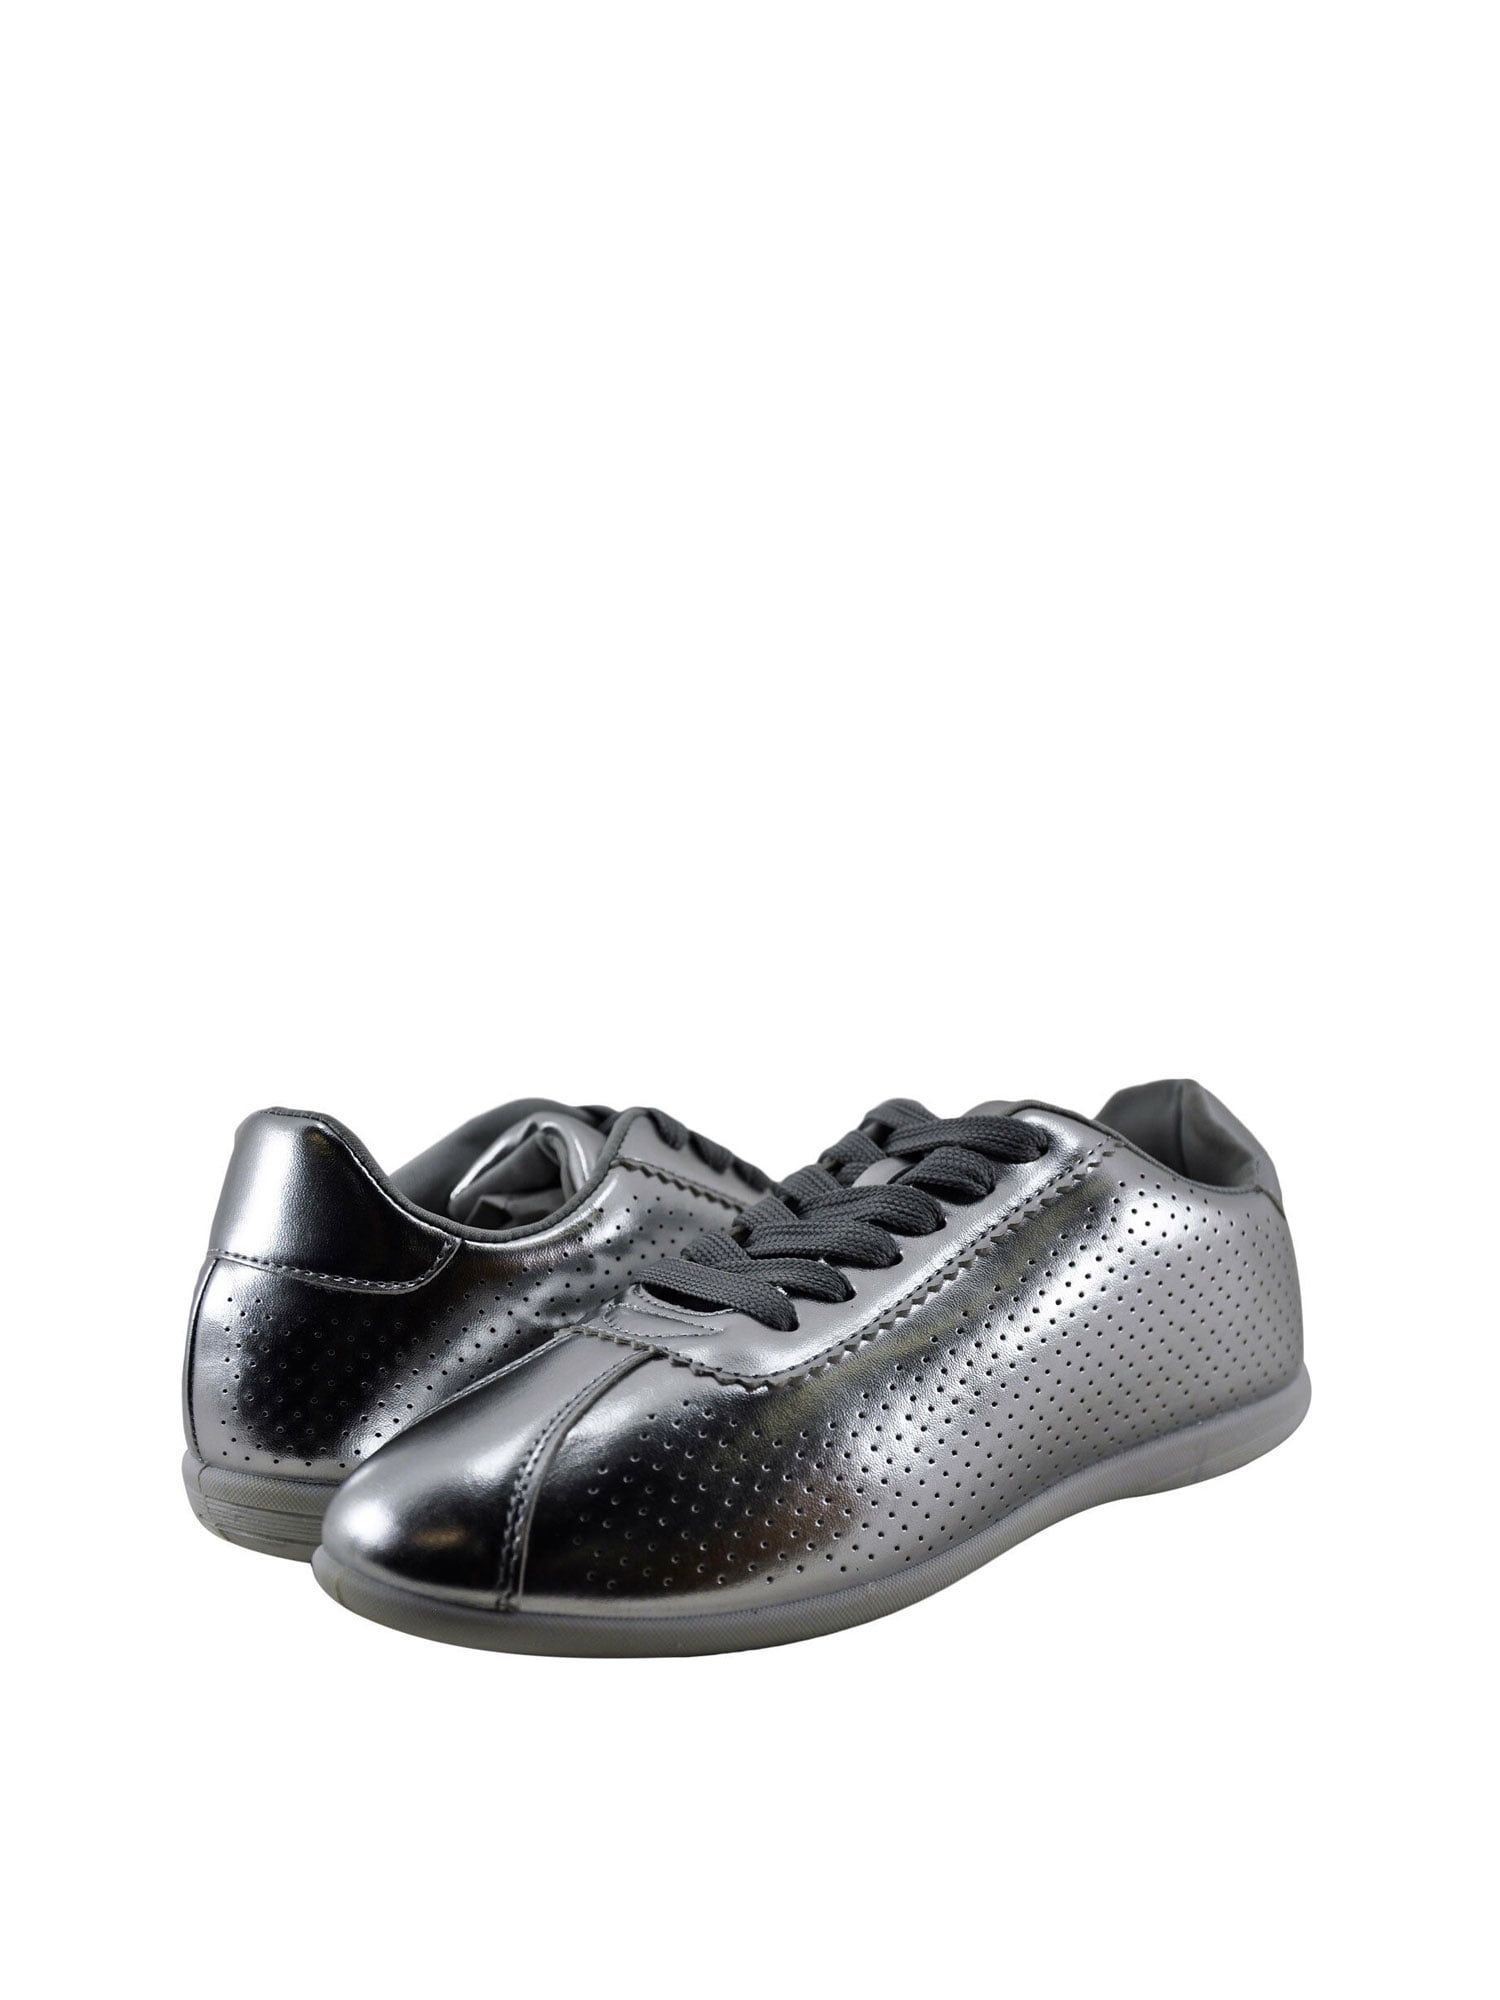 Women's Shoes Qupid Reba 161C Lace Up Sneaker Grey Crush Velvet *New* 